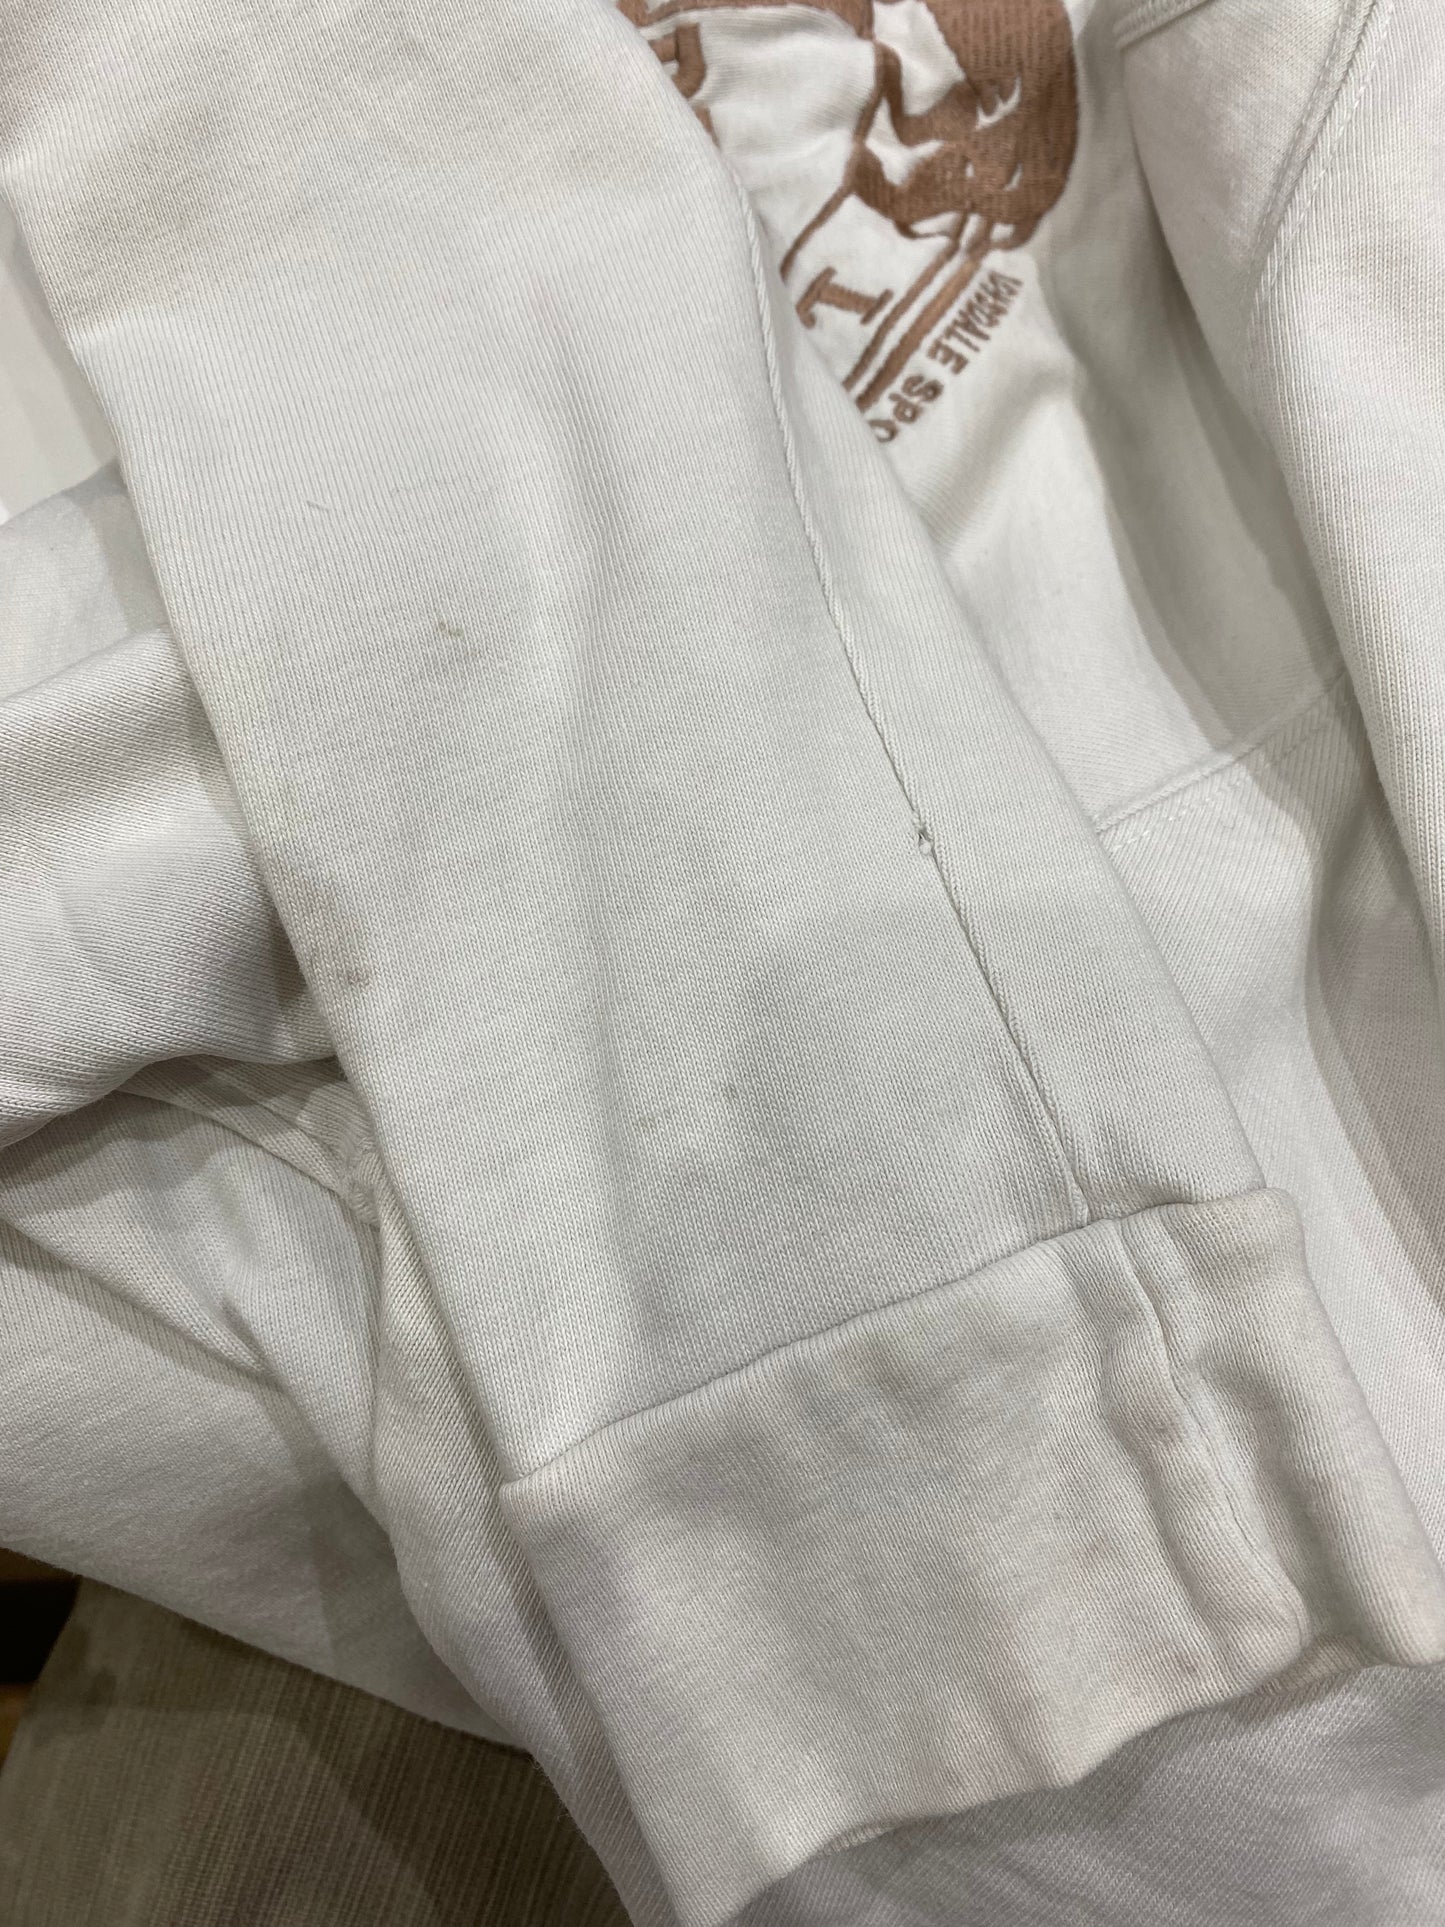 EUROS DROP | medium white lonsdale sweatshirt with logo detail